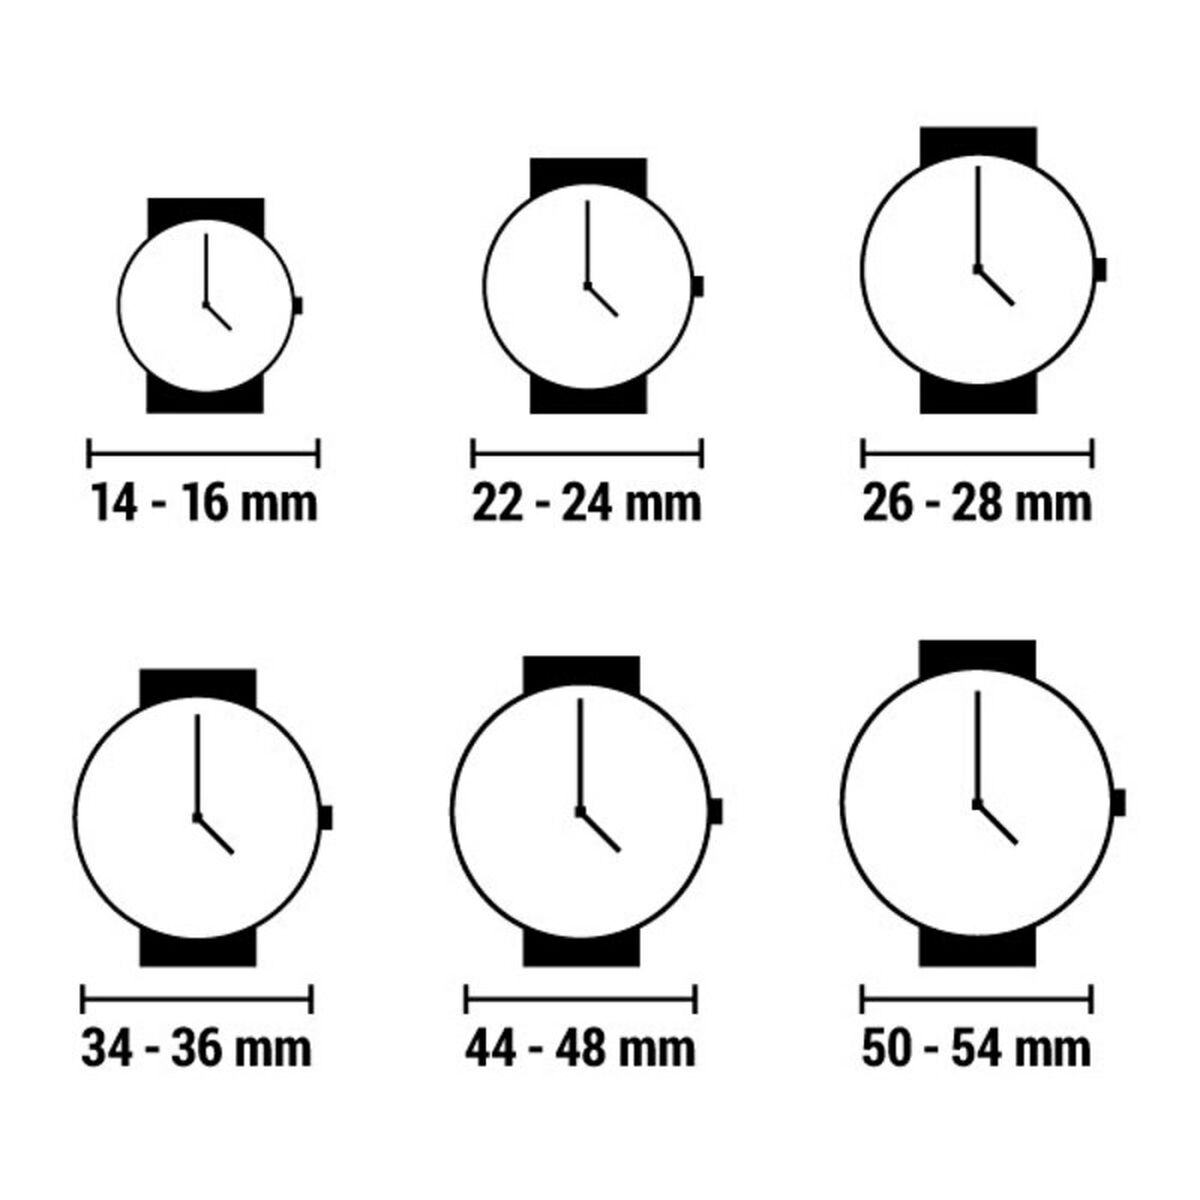 Horloge Heren Nautica NAPPRF001 (Ø 47 mm)